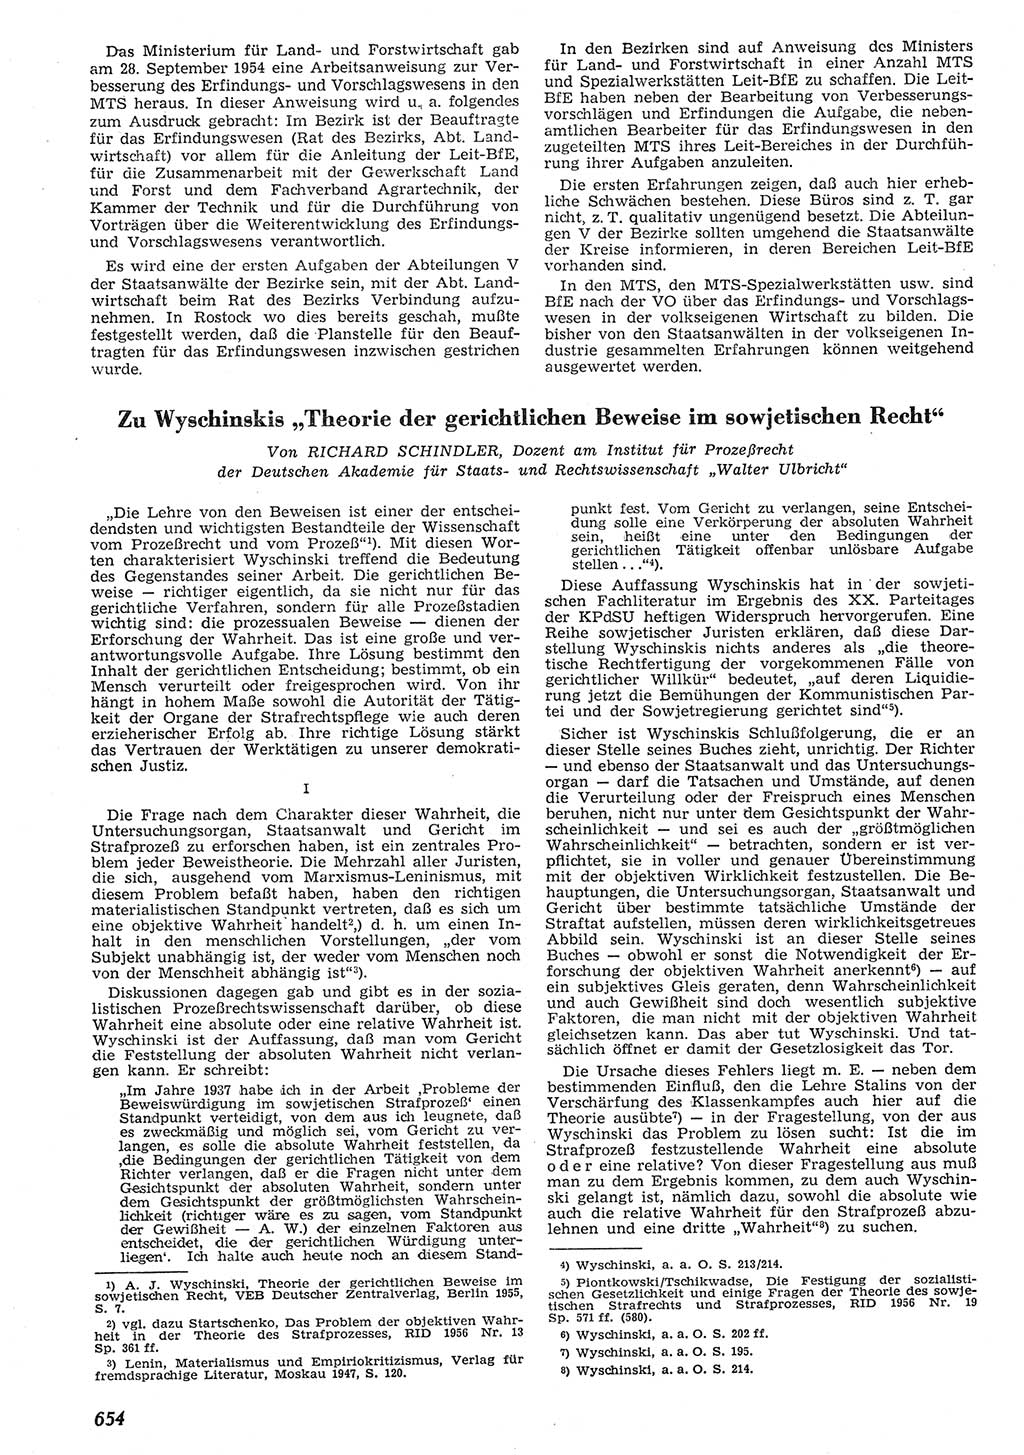 Neue Justiz (NJ), Zeitschrift für Recht und Rechtswissenschaft [Deutsche Demokratische Republik (DDR)], 10. Jahrgang 1956, Seite 654 (NJ DDR 1956, S. 654)